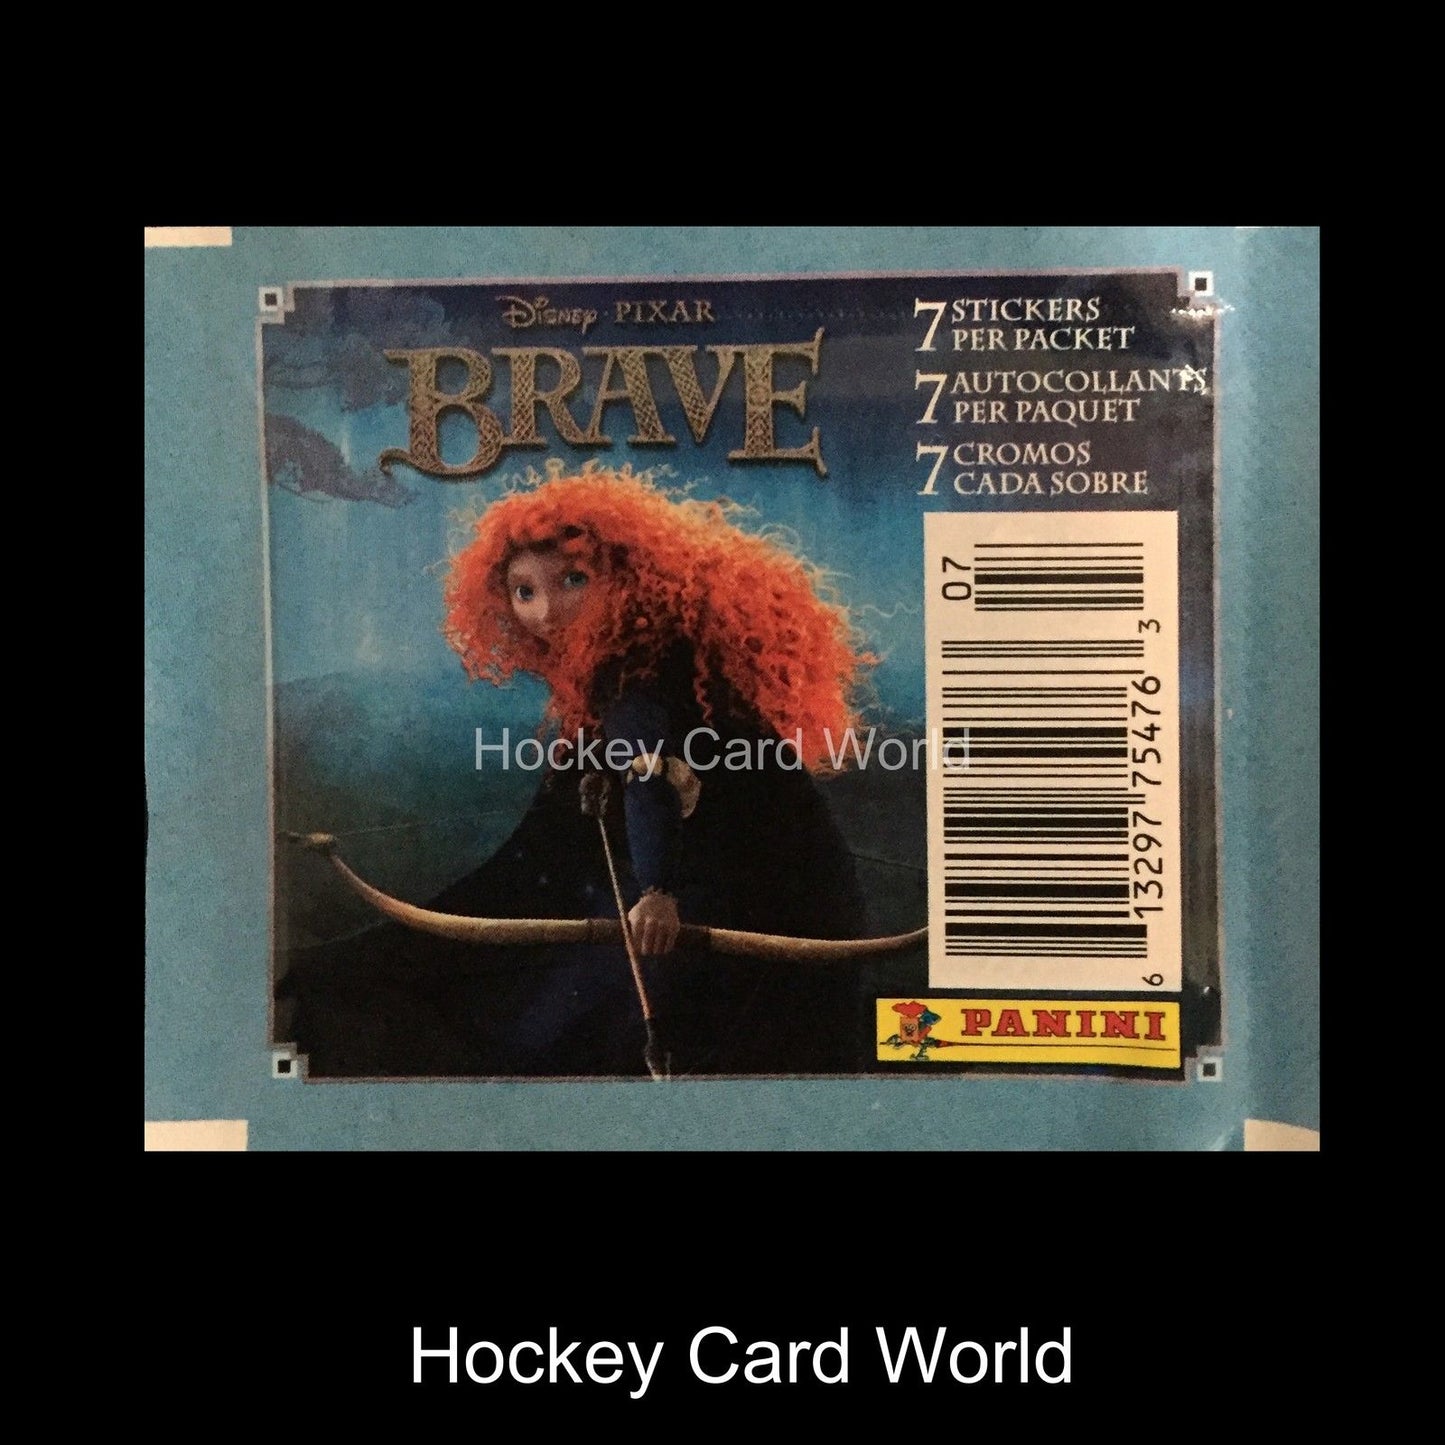  2012 Disney Pixar Brave (7 Album Sticker Panini Pack) Image 1